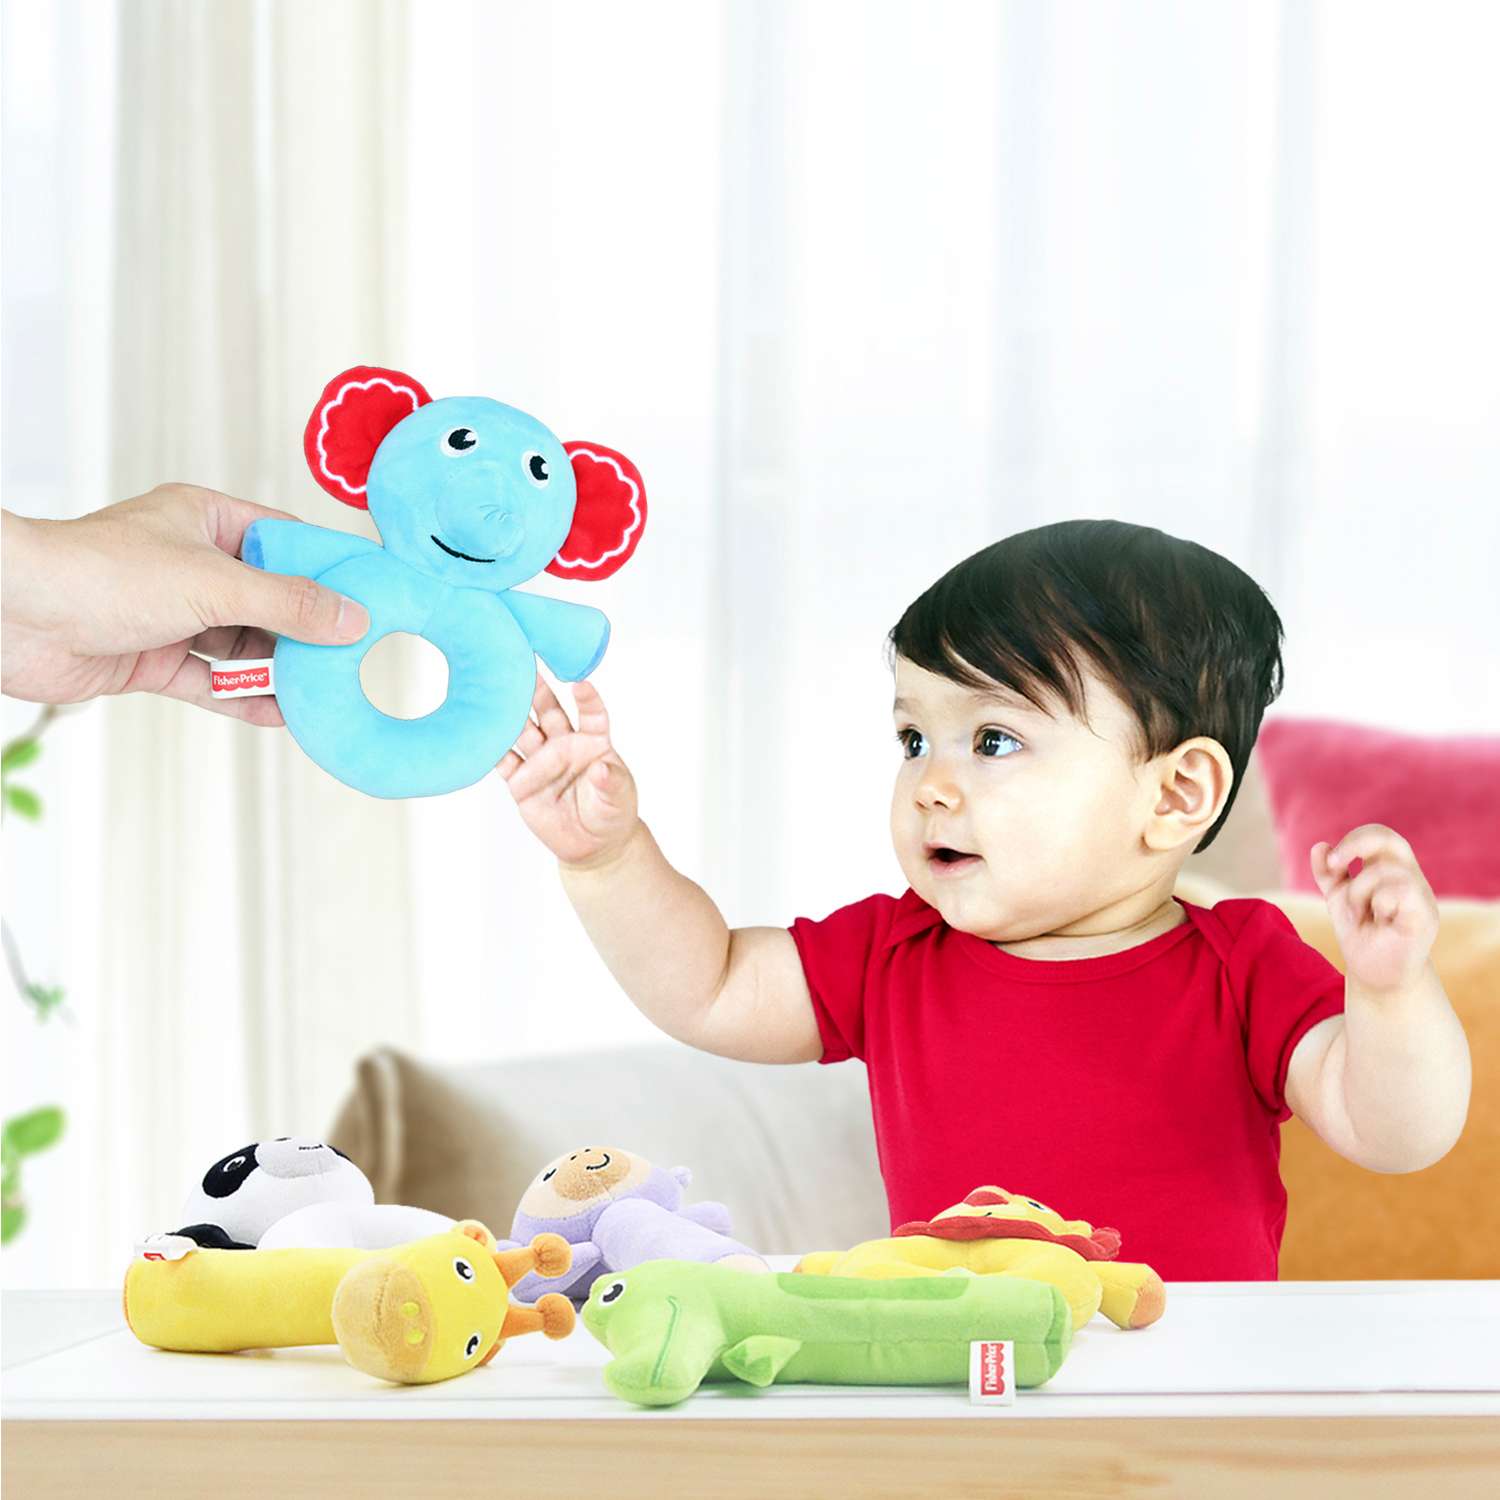 Погремушка-колечко Fisher Price Панда развивающая мягкая игрушка для детей 0+ - фото 6